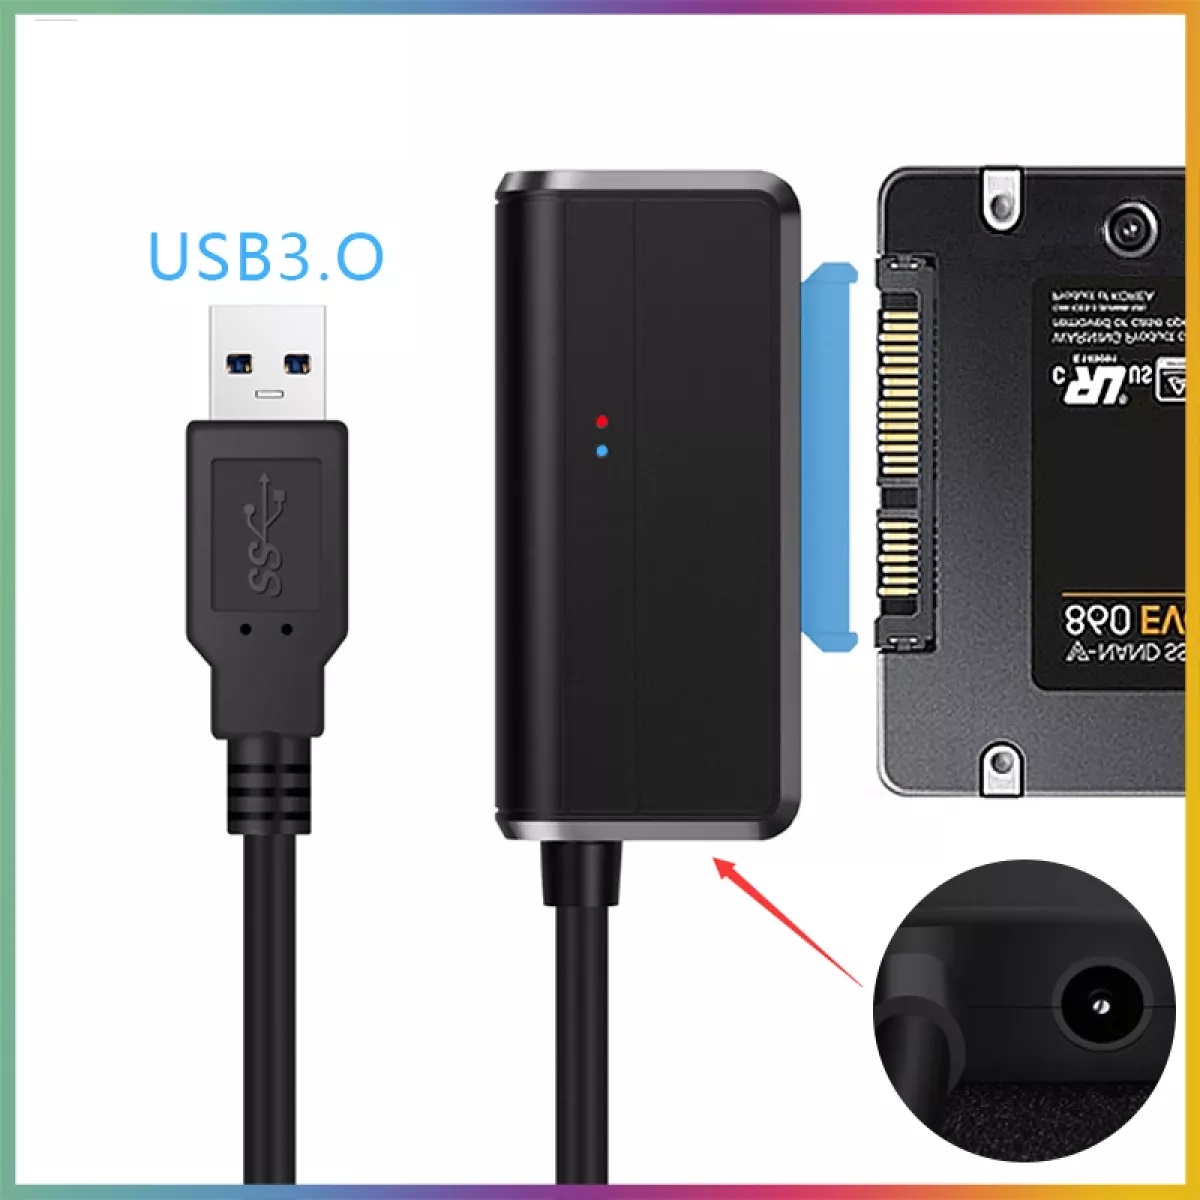 Bộ Chuyển Đổi Cáp Ổ Cứng USB SATA III Đen (3.0) Có đèn báo tín hiệu tốc độ cao + Tặng kèm que chọc sim